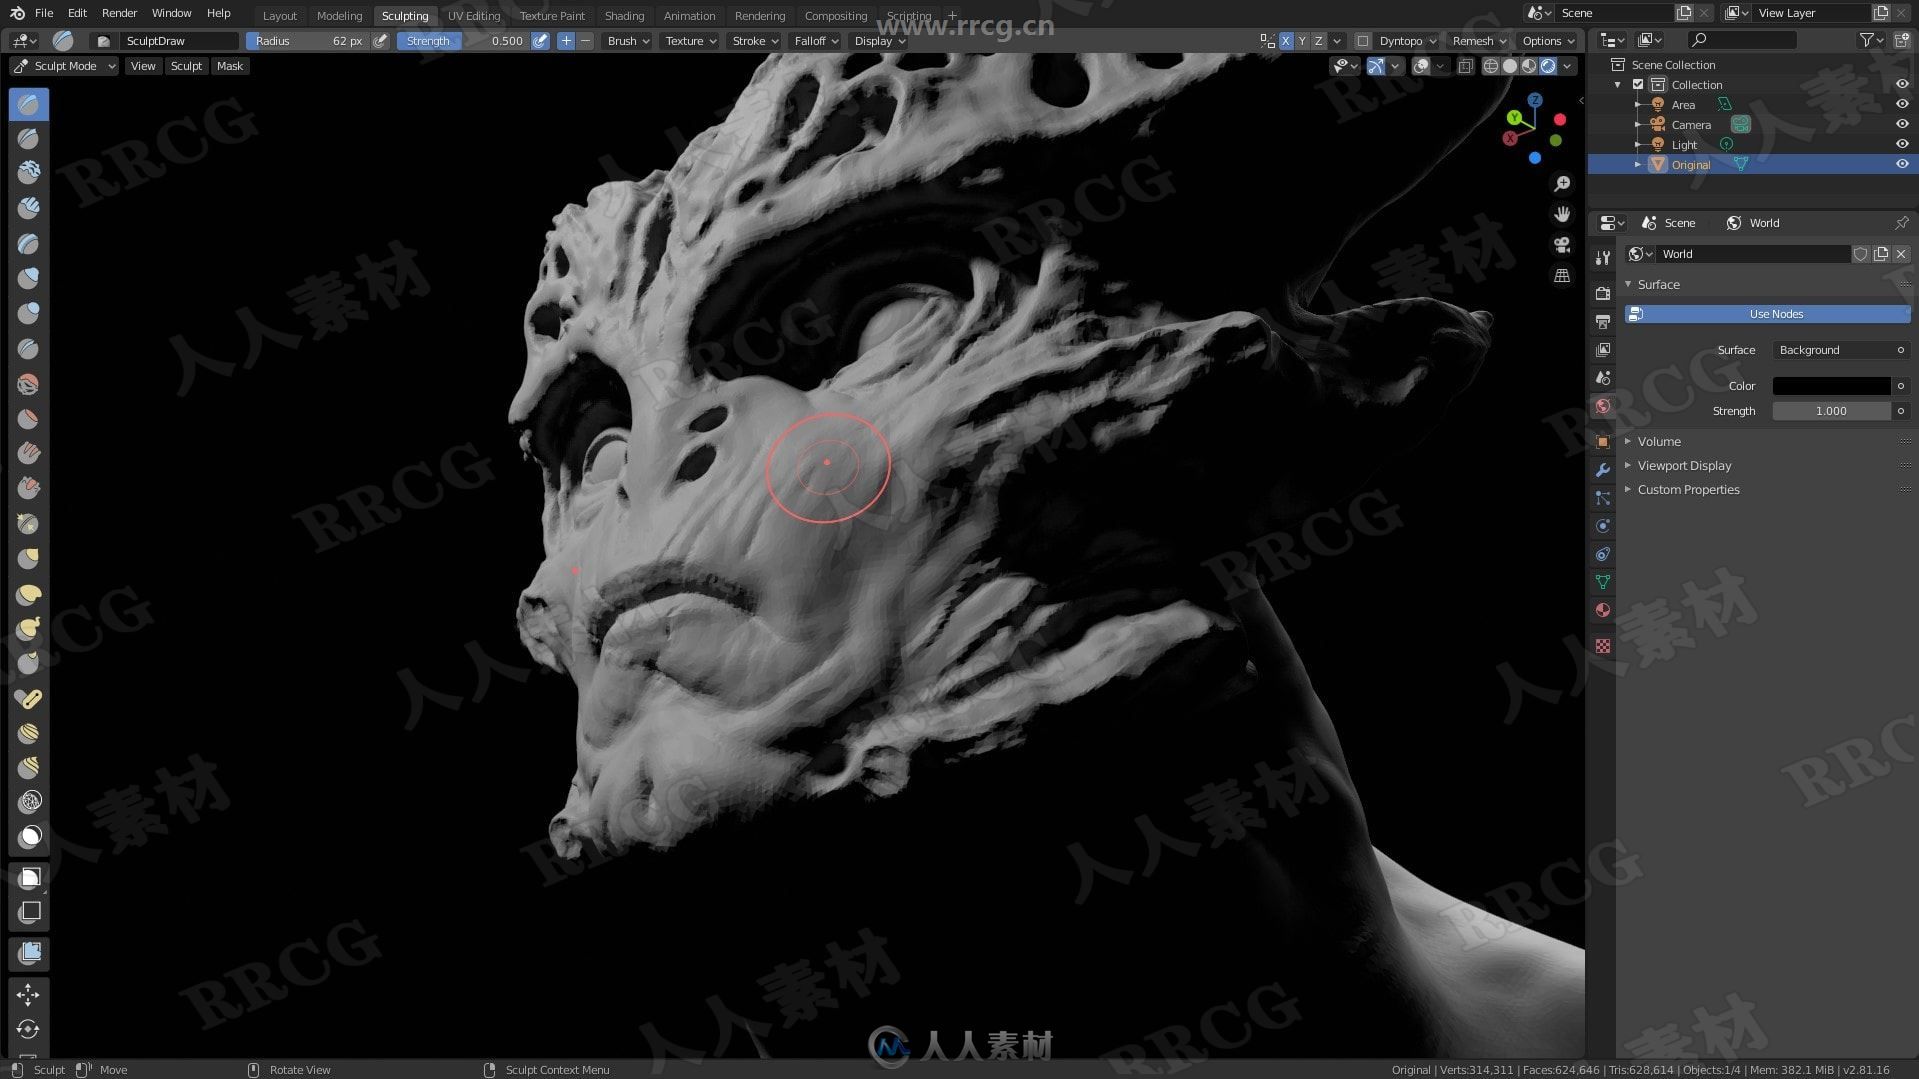 Blender外星人概念造型雕刻制作流程视频教程